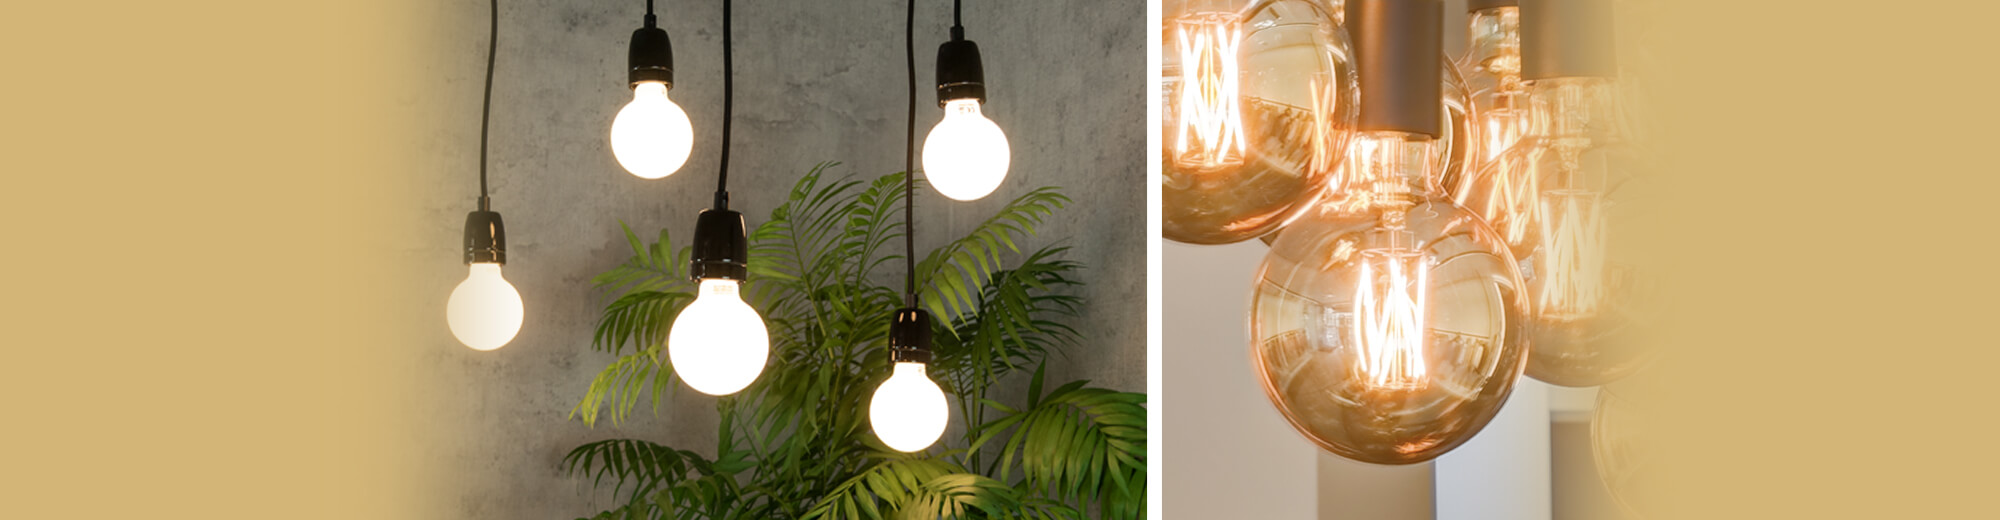 LED Globes - Glühlampen für perfekte Rundumabstrahlung | SEGULA | Wandleuchten